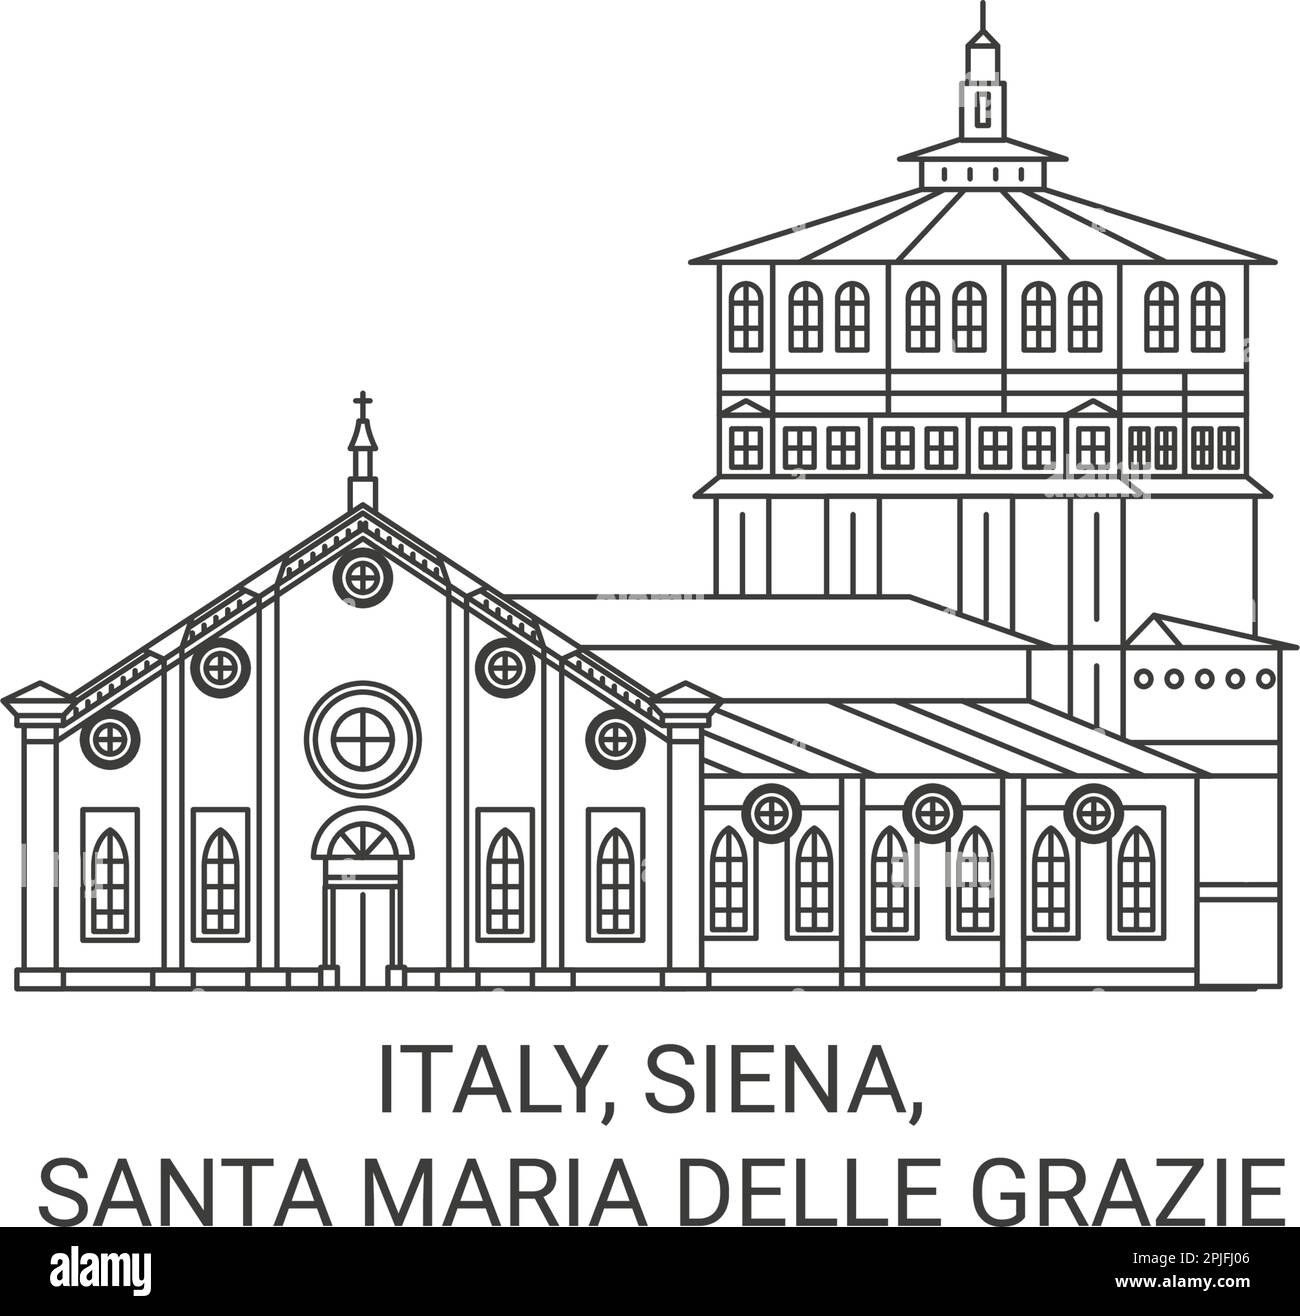 Italien, Siena, Santa Maria delle Grazie Reise-Wahrzeichen Vektordarstellung Stock Vektor